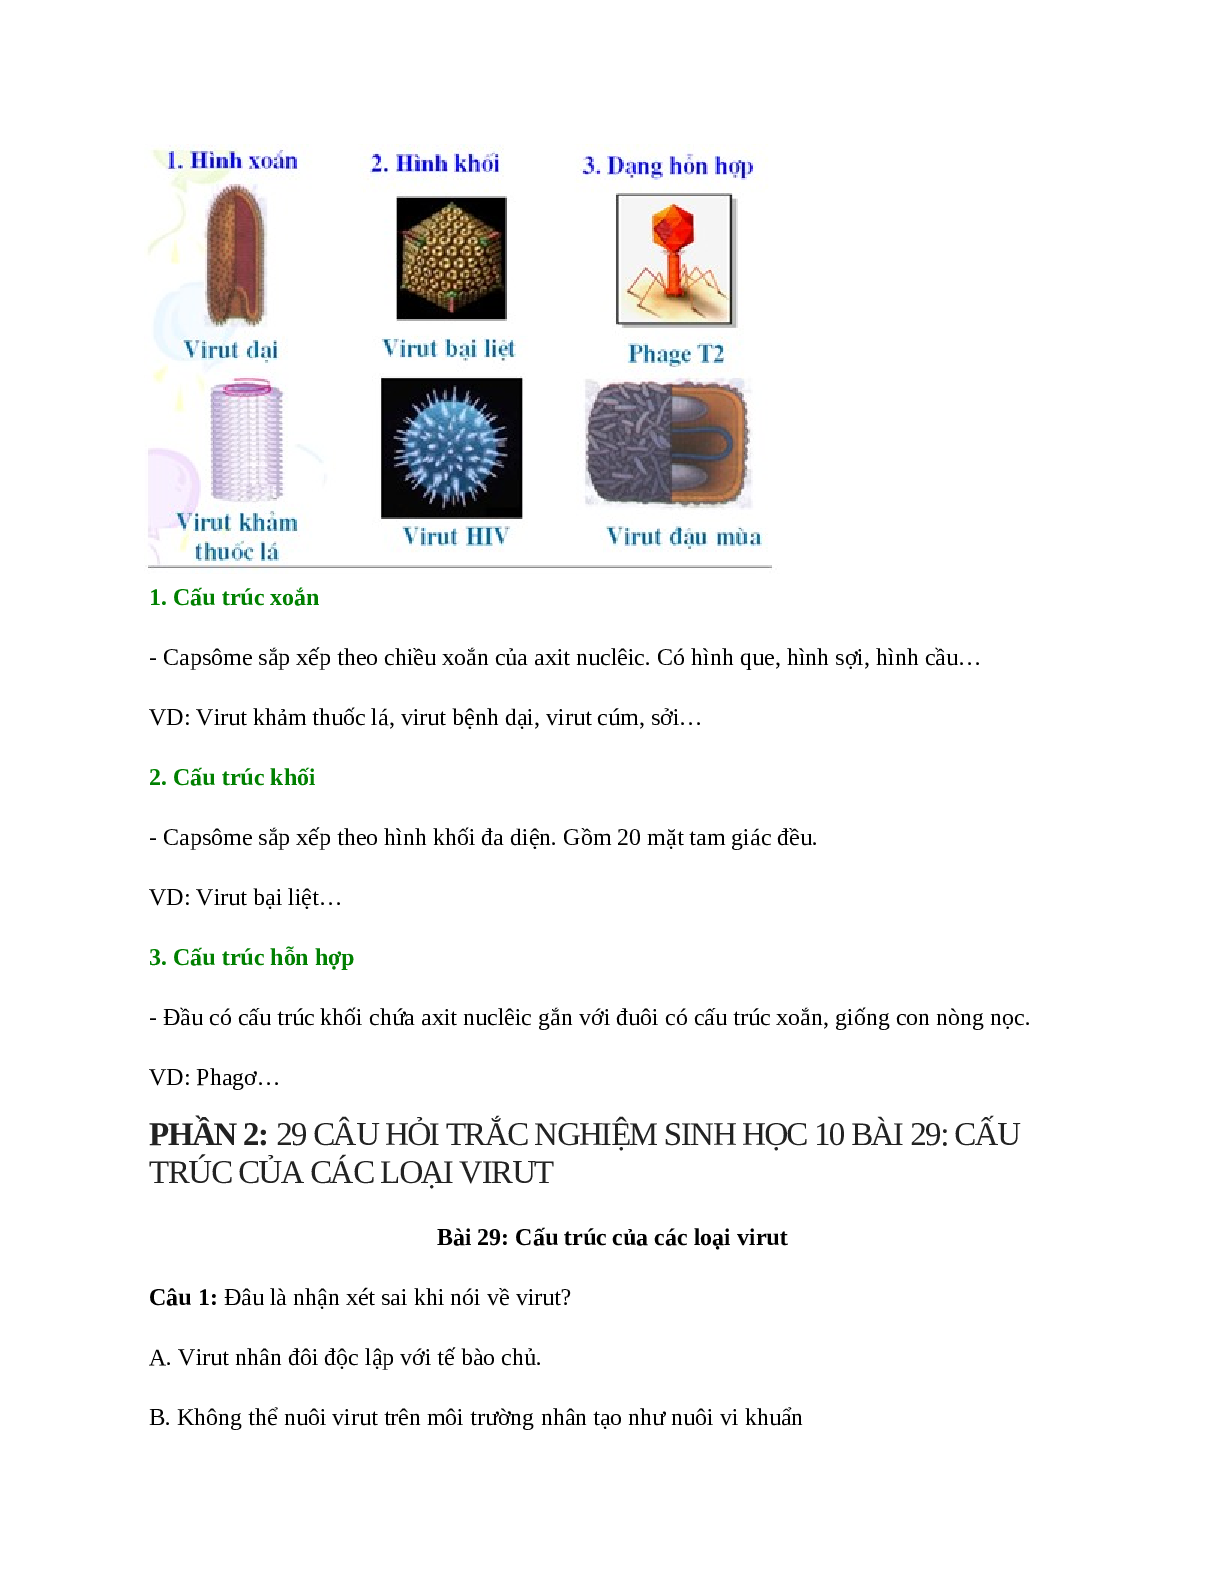 Sinh học 10 Bài 29 (Lý thuyết và trắc nghiệm): Cấu trúc của các loại virut (trang 3)